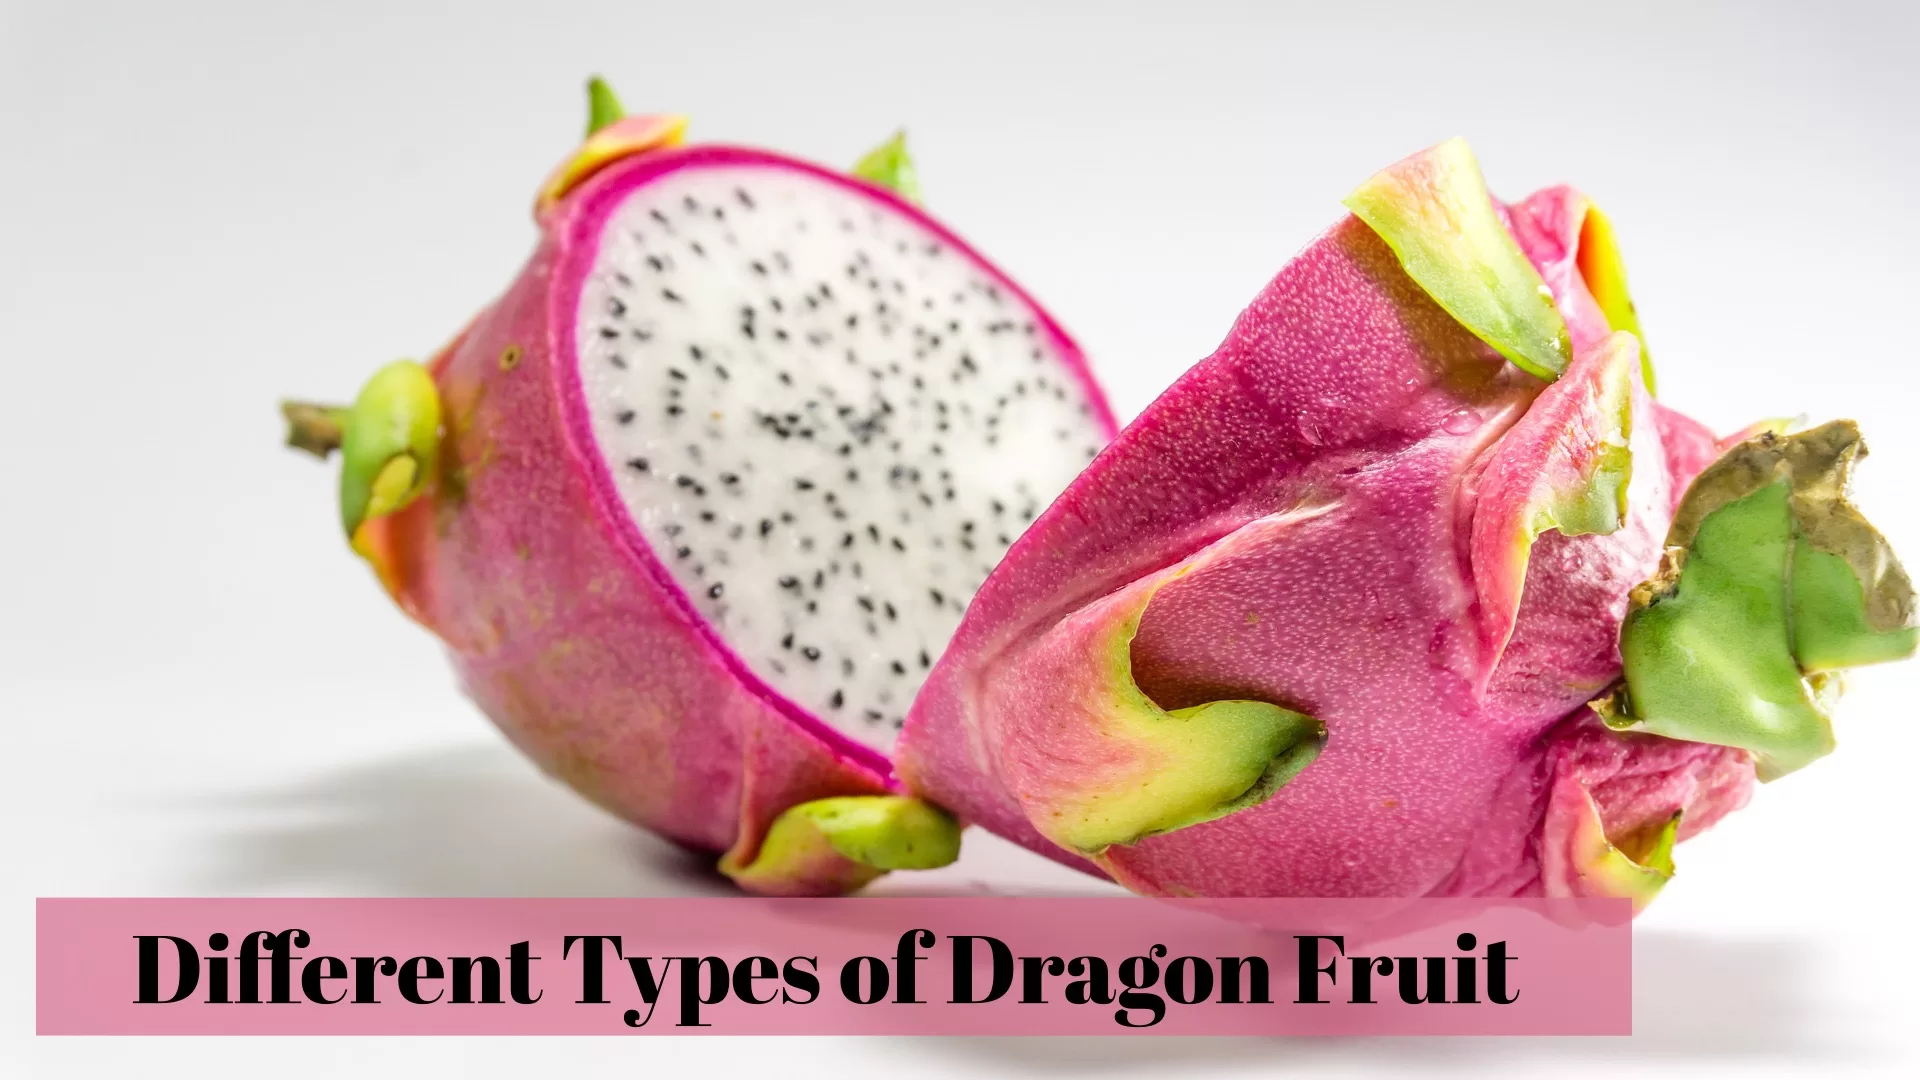 Types of Dragon Fruit